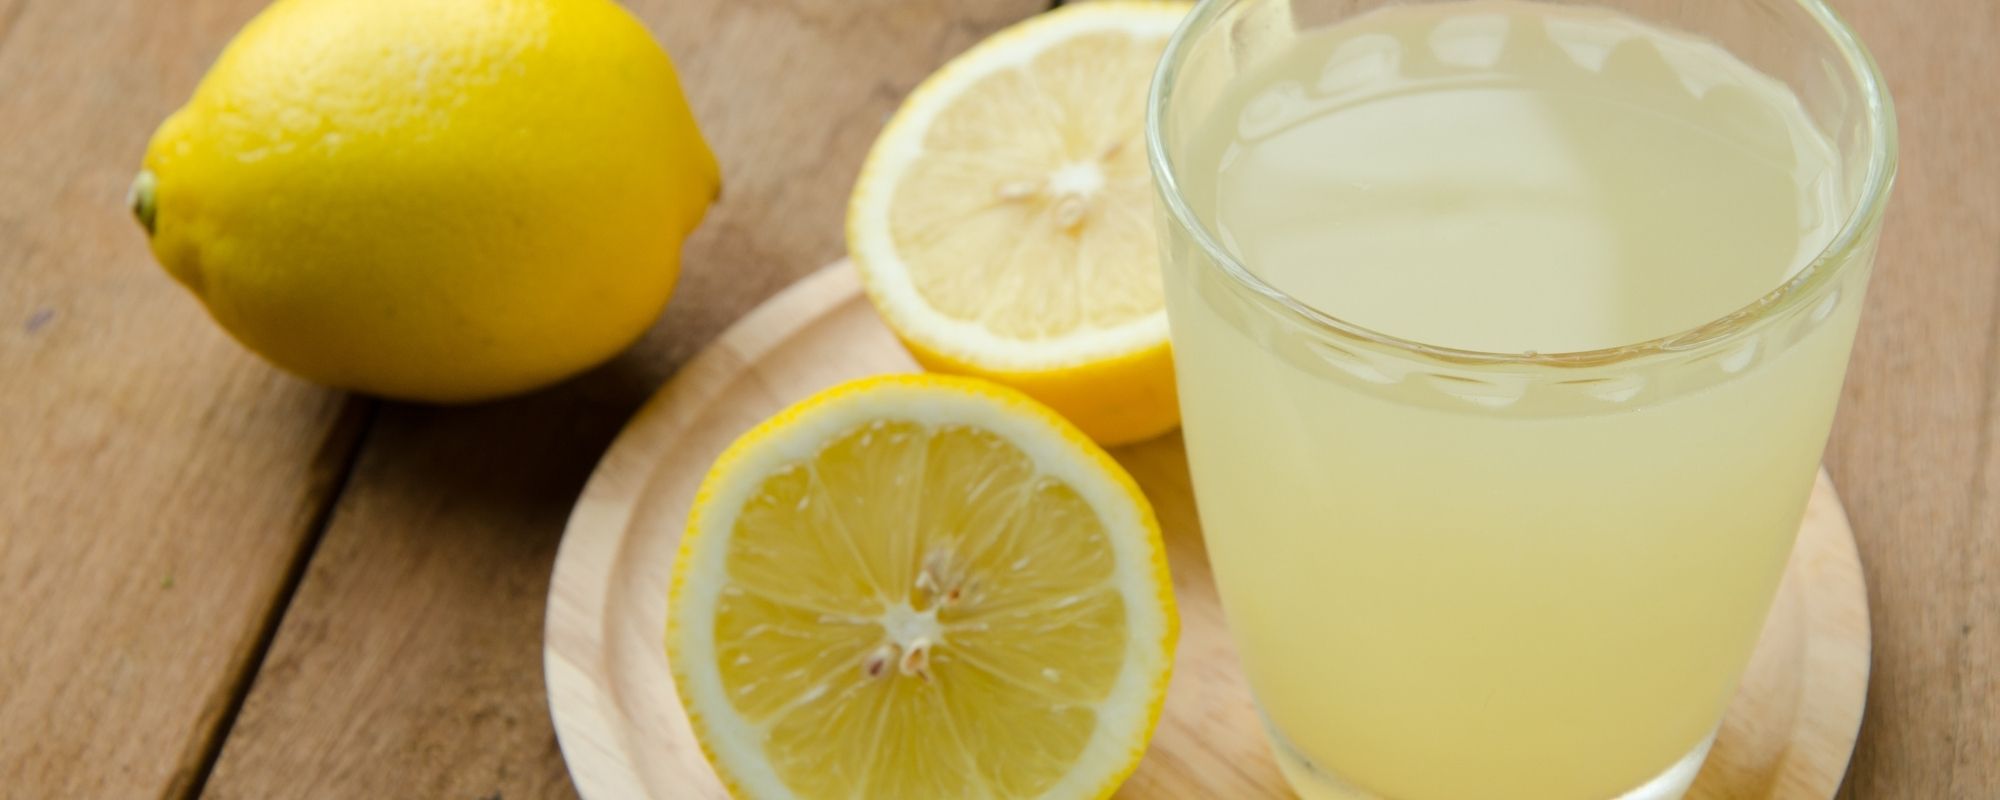 Jus de citron remede naturel migraine